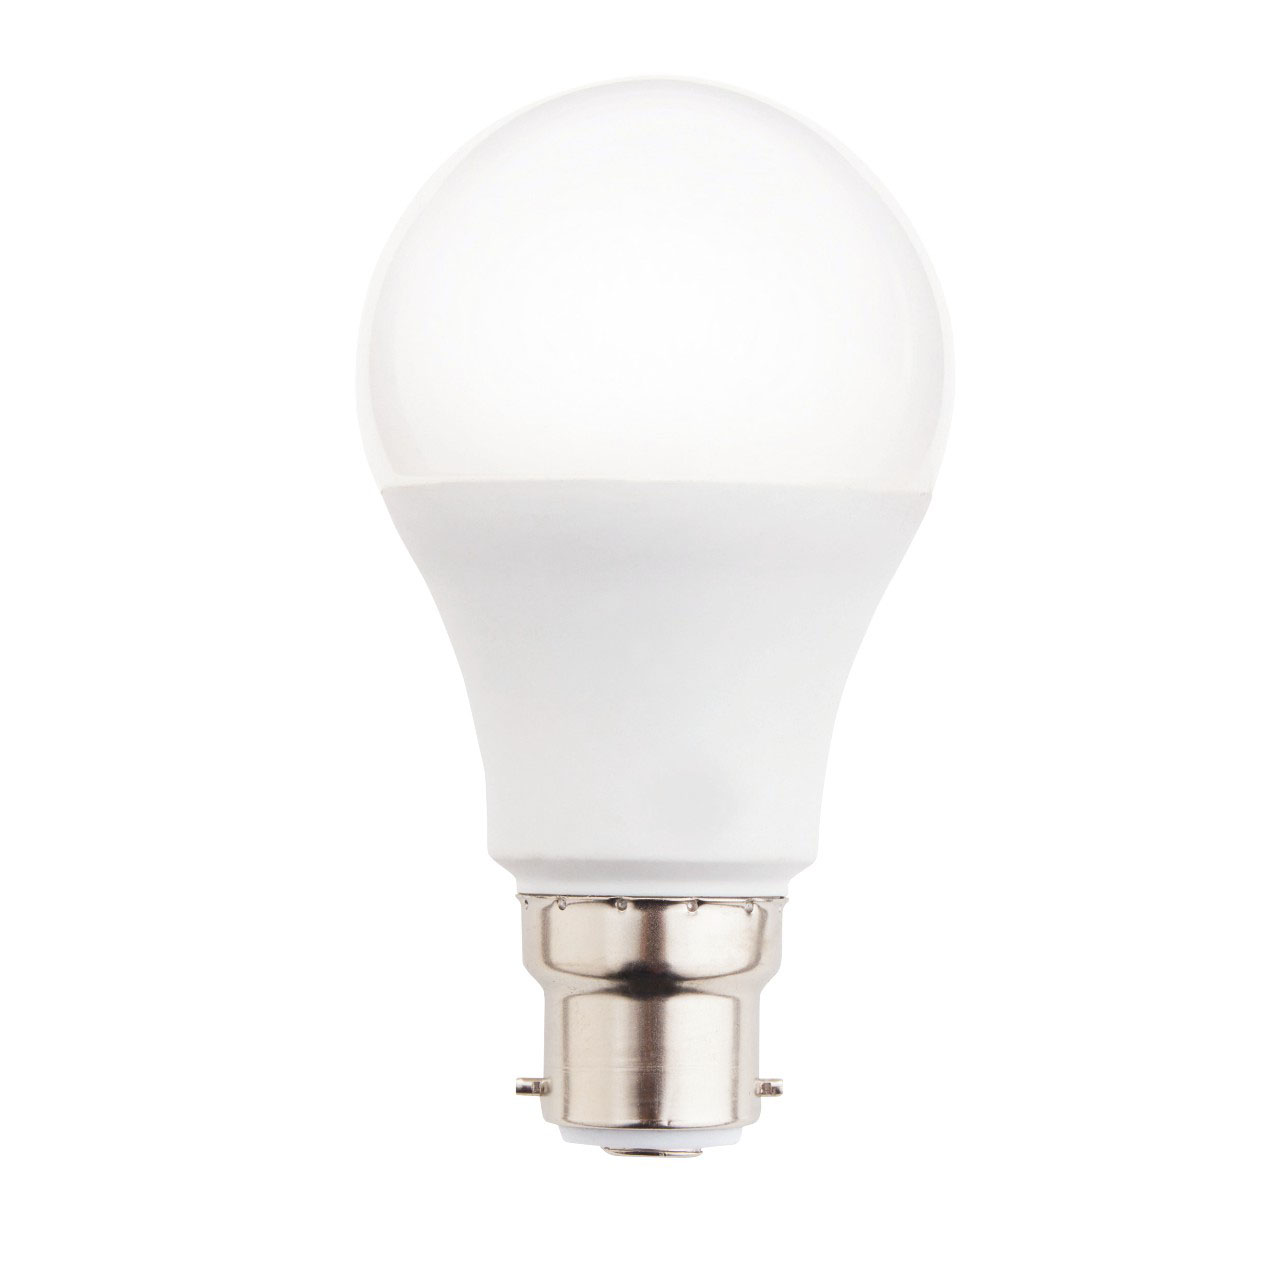 LED GLS Light Bulbs - Pack of 4